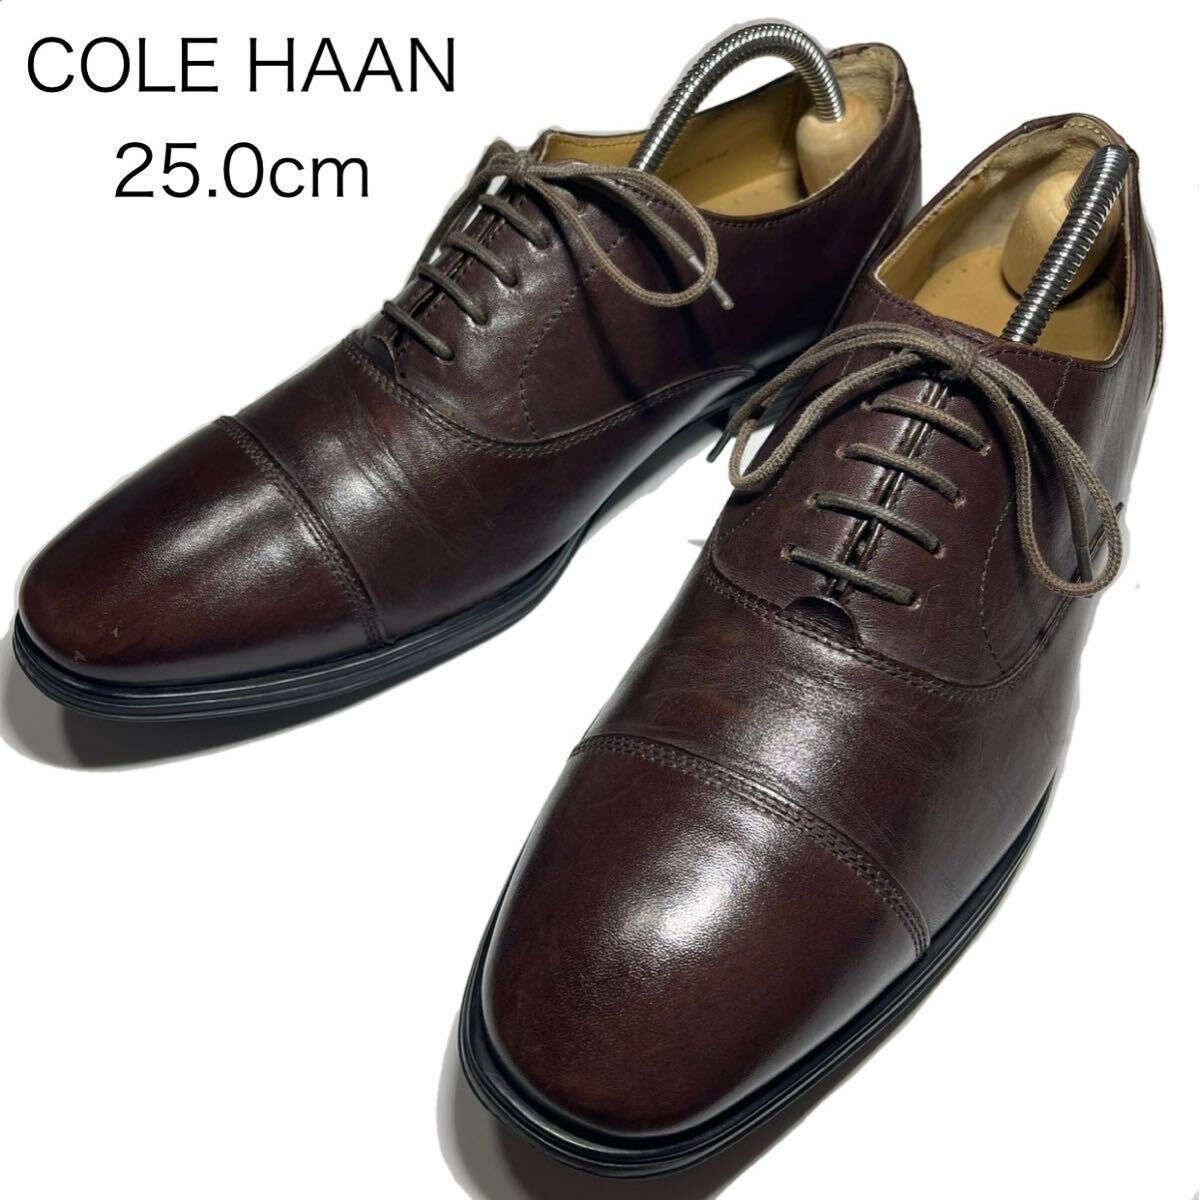 【コールハーン】 COLE HAAN / 25.0cm / こげ茶 / ダークブラウン / 美品 / ストレートチップ / 内羽根式 / 革靴 / ビジネスシューズの画像1